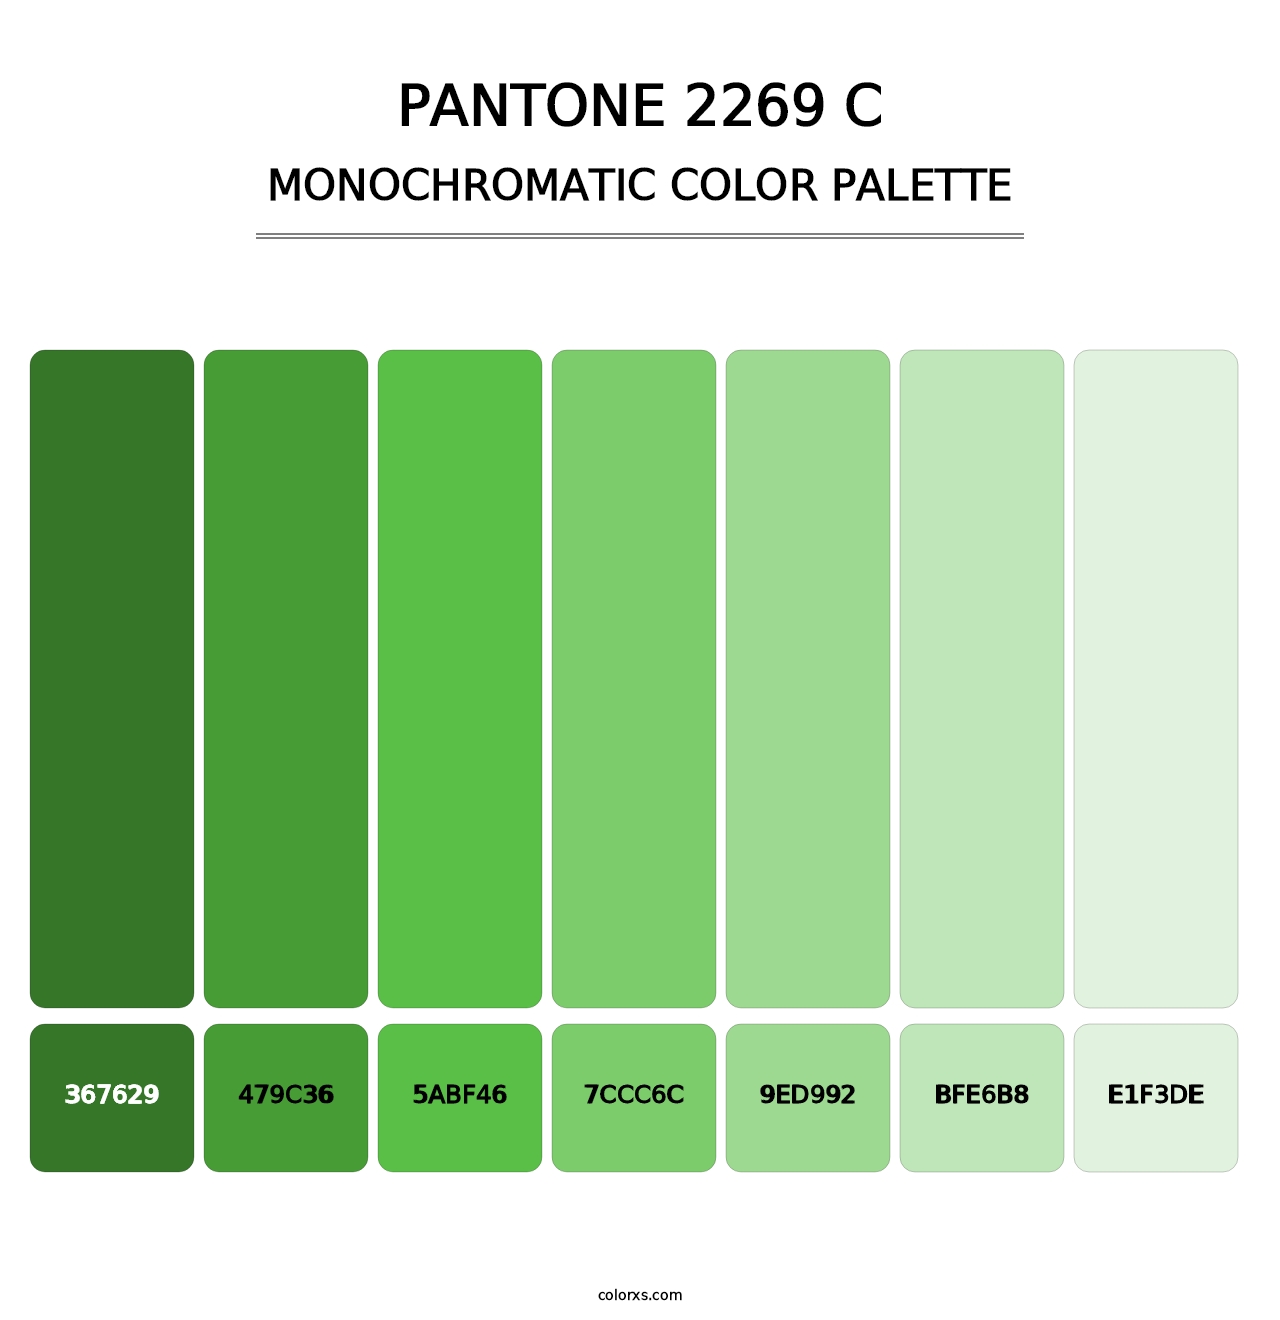 PANTONE 2269 C - Monochromatic Color Palette